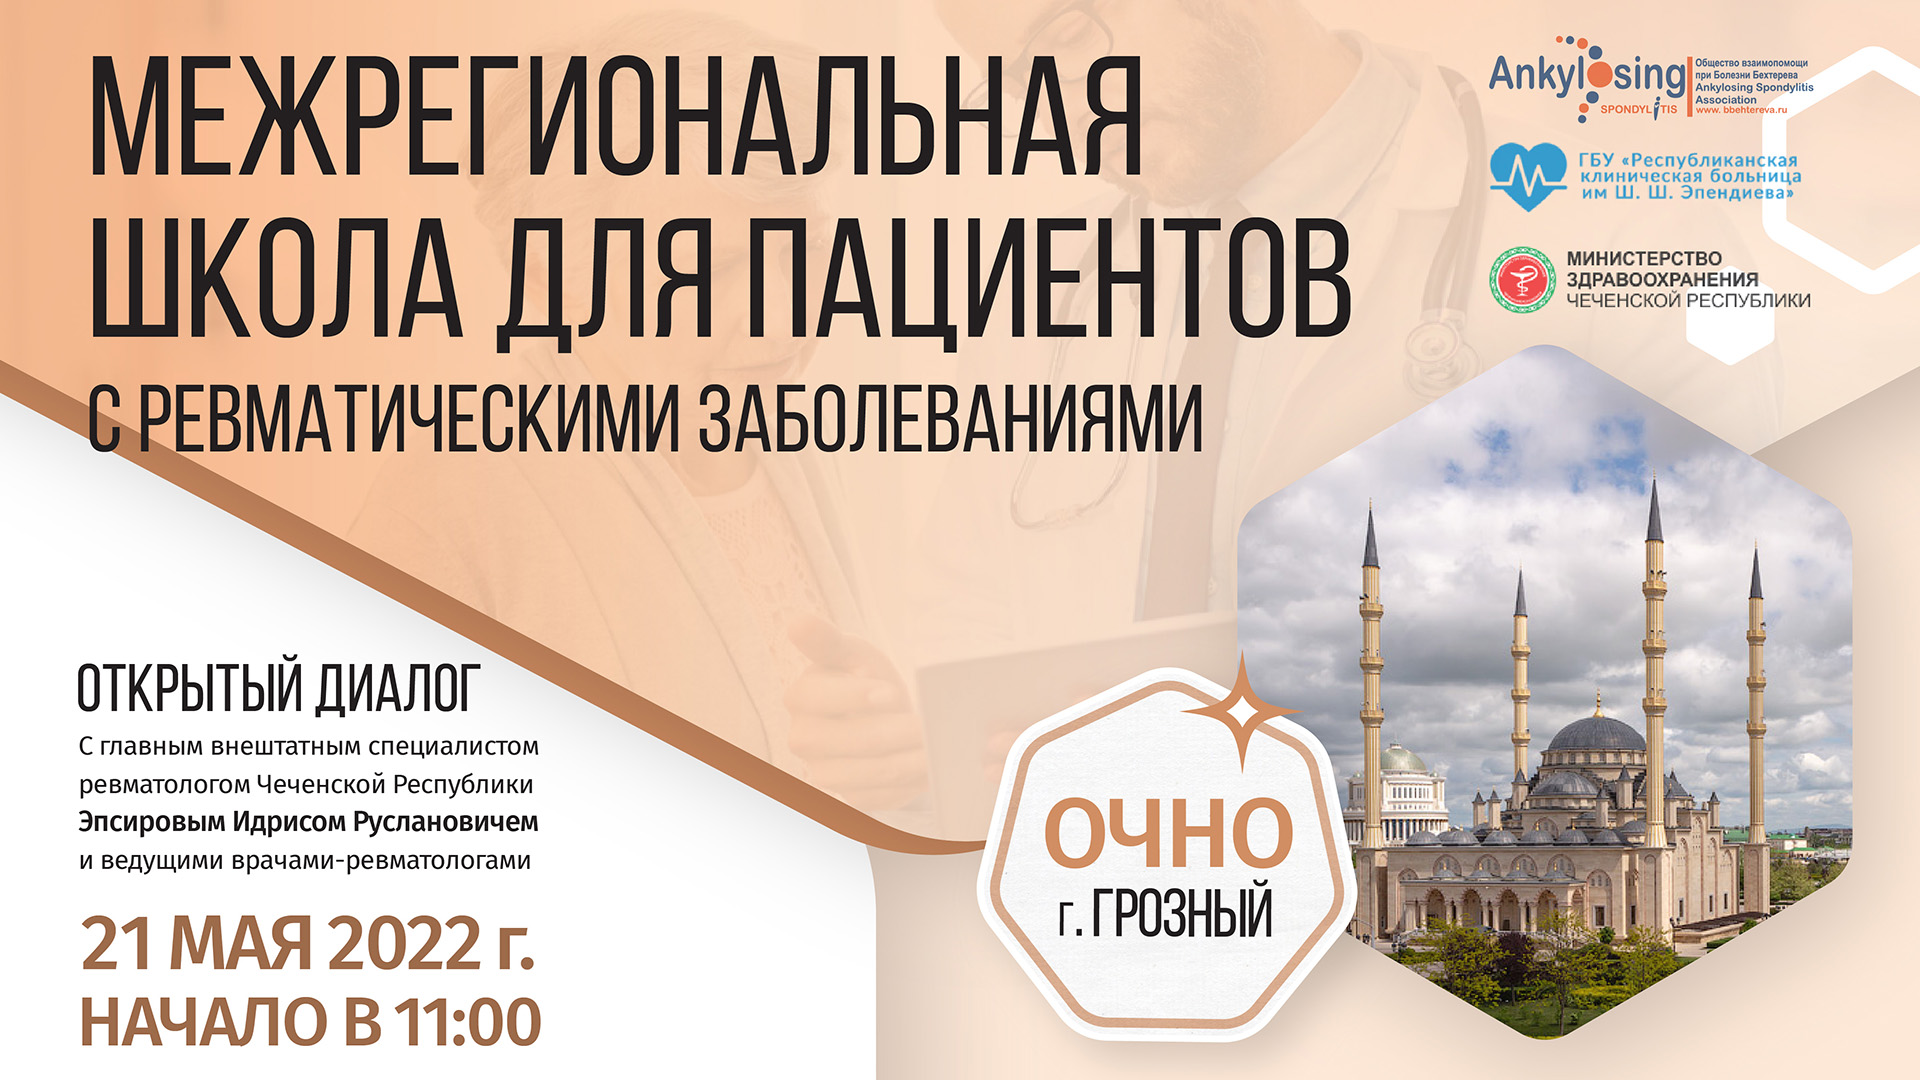 Межрегиональная Школа для пациентов «Открытый диалог с ревматологом» пройдет в Чеченской Республике